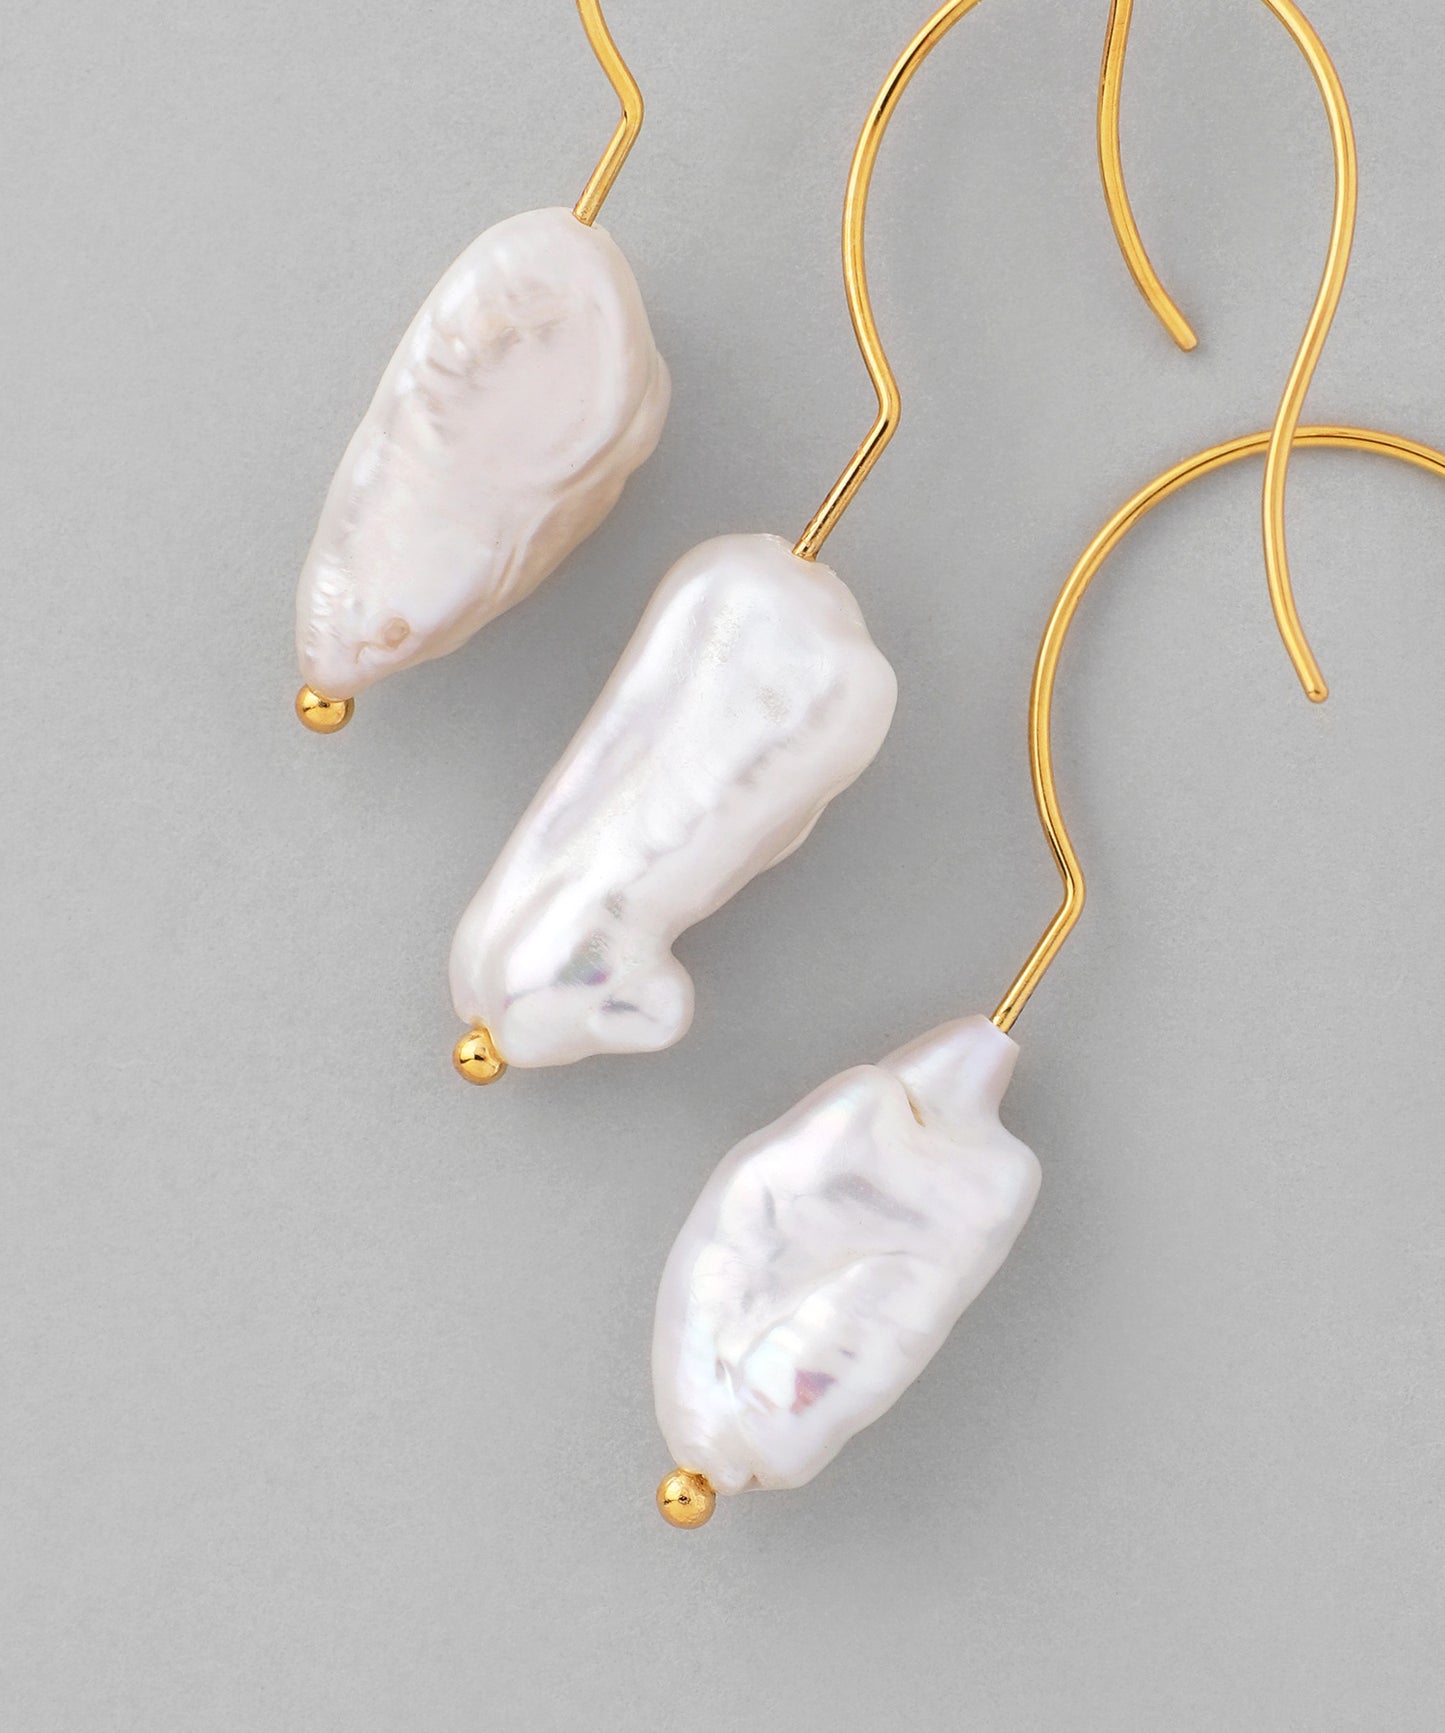 Freshwater Pearl Hook Earrings